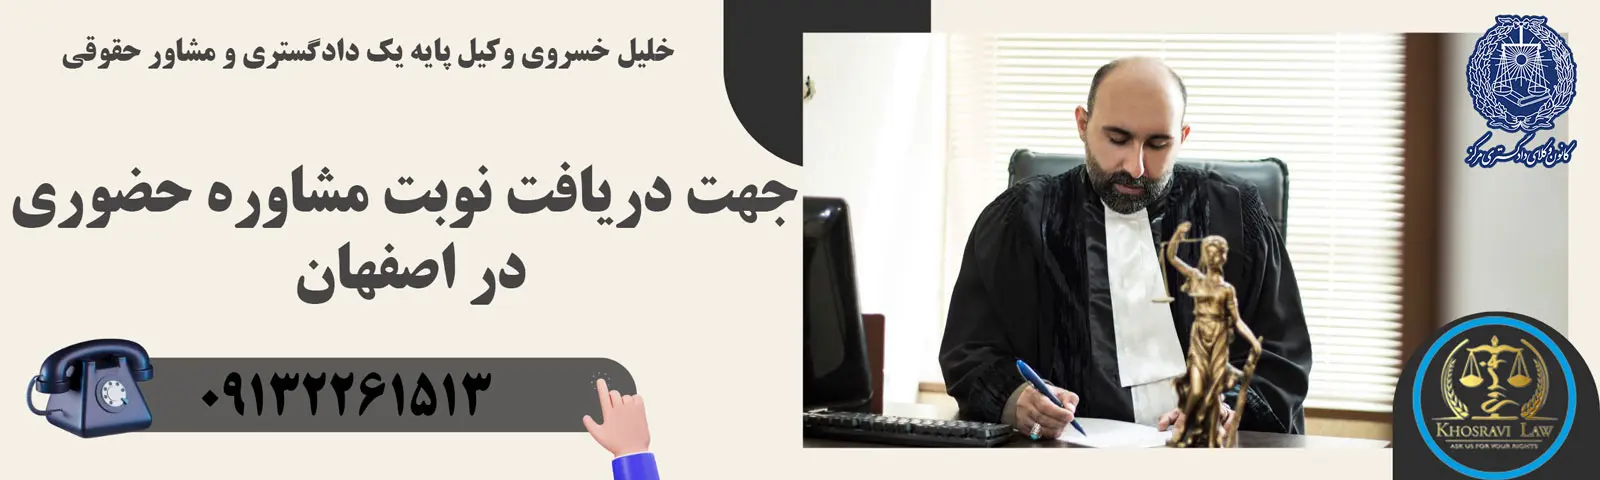 مشاوره با وکیل ملکی در اصفهان به صورت رایگان